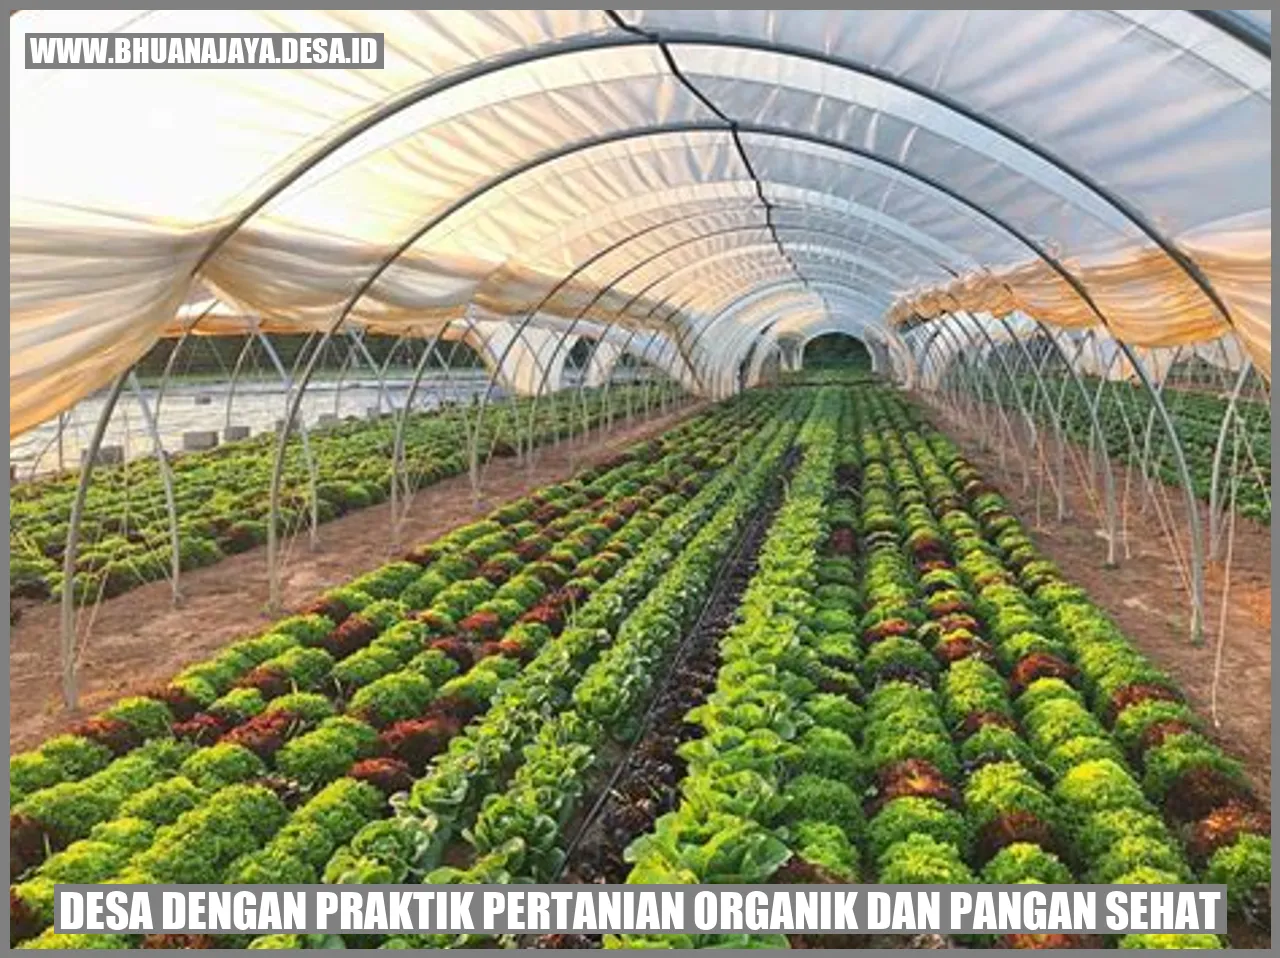 Desa dengan praktik pertanian organik dan pangan sehat